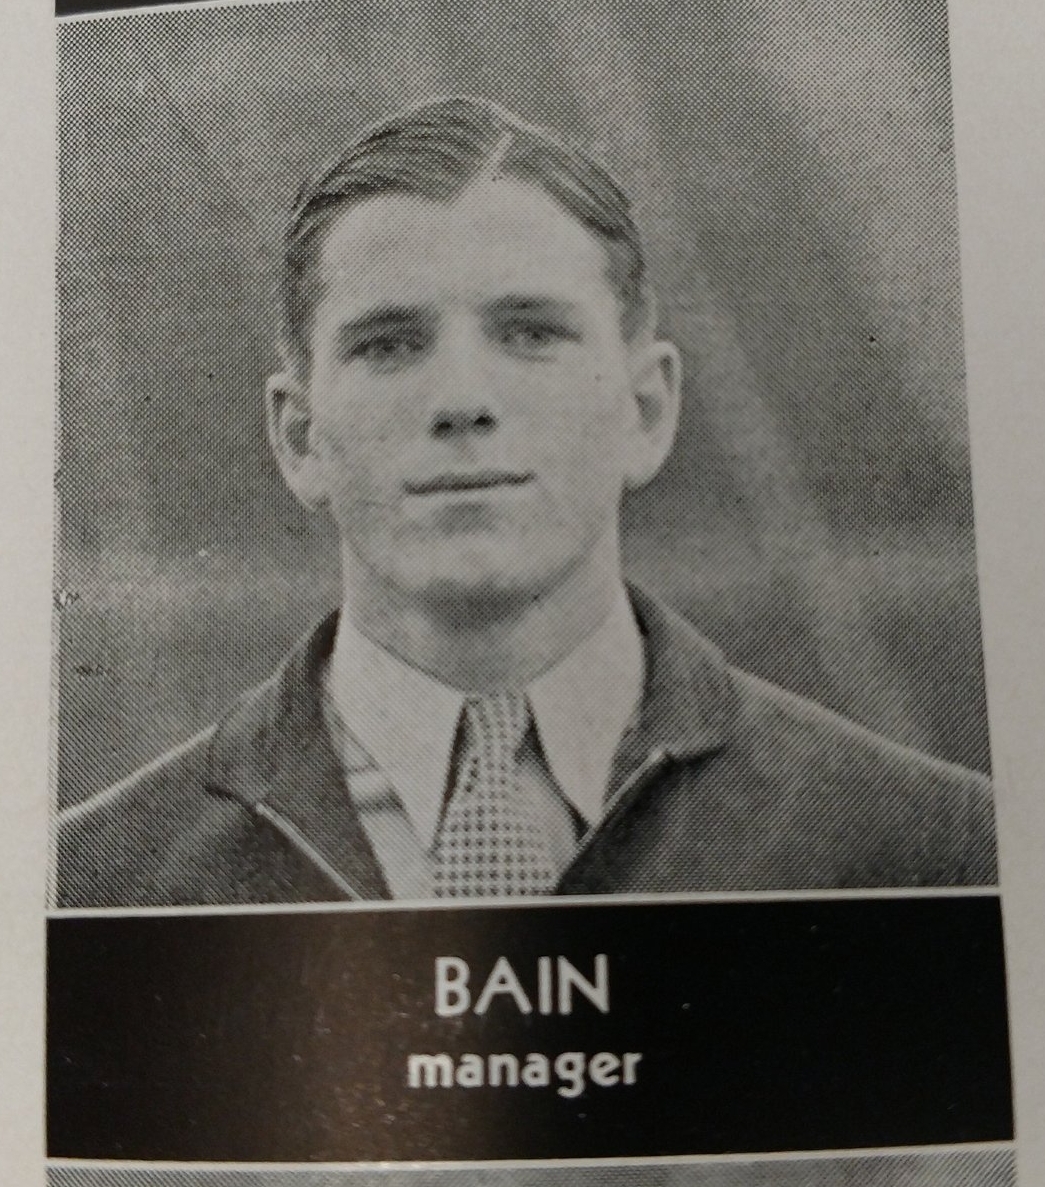  Bain- football manager